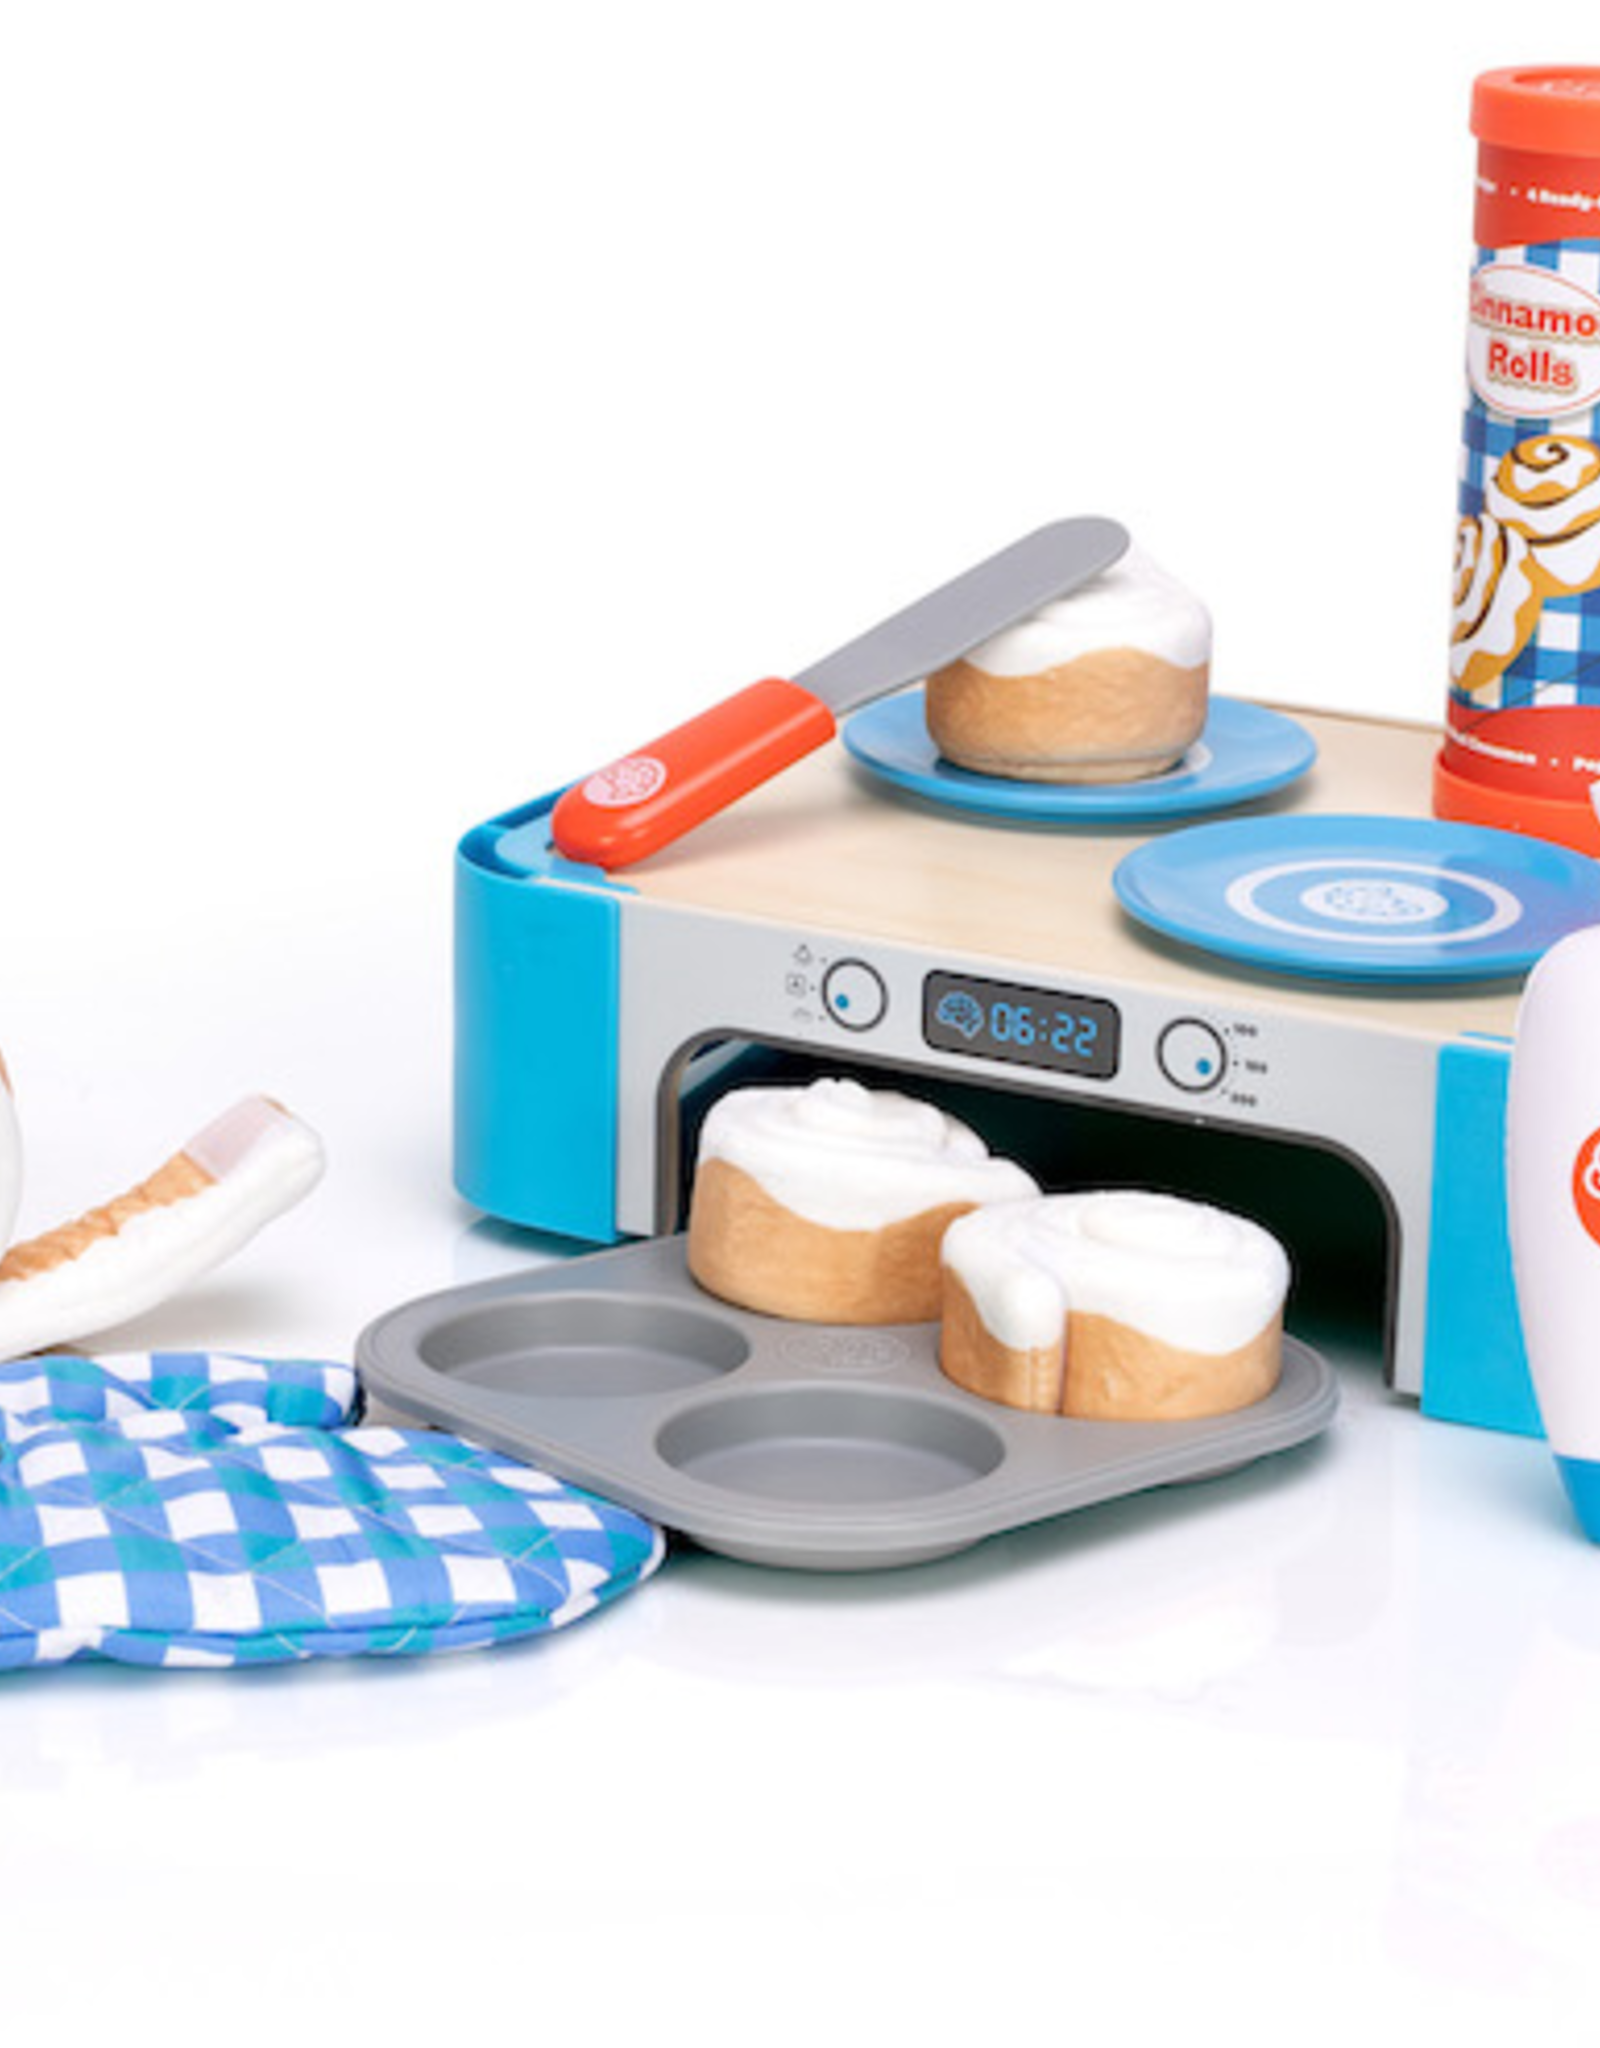 Fat Brain Toy Co Pretendables: Cinnamon Roll  Set -